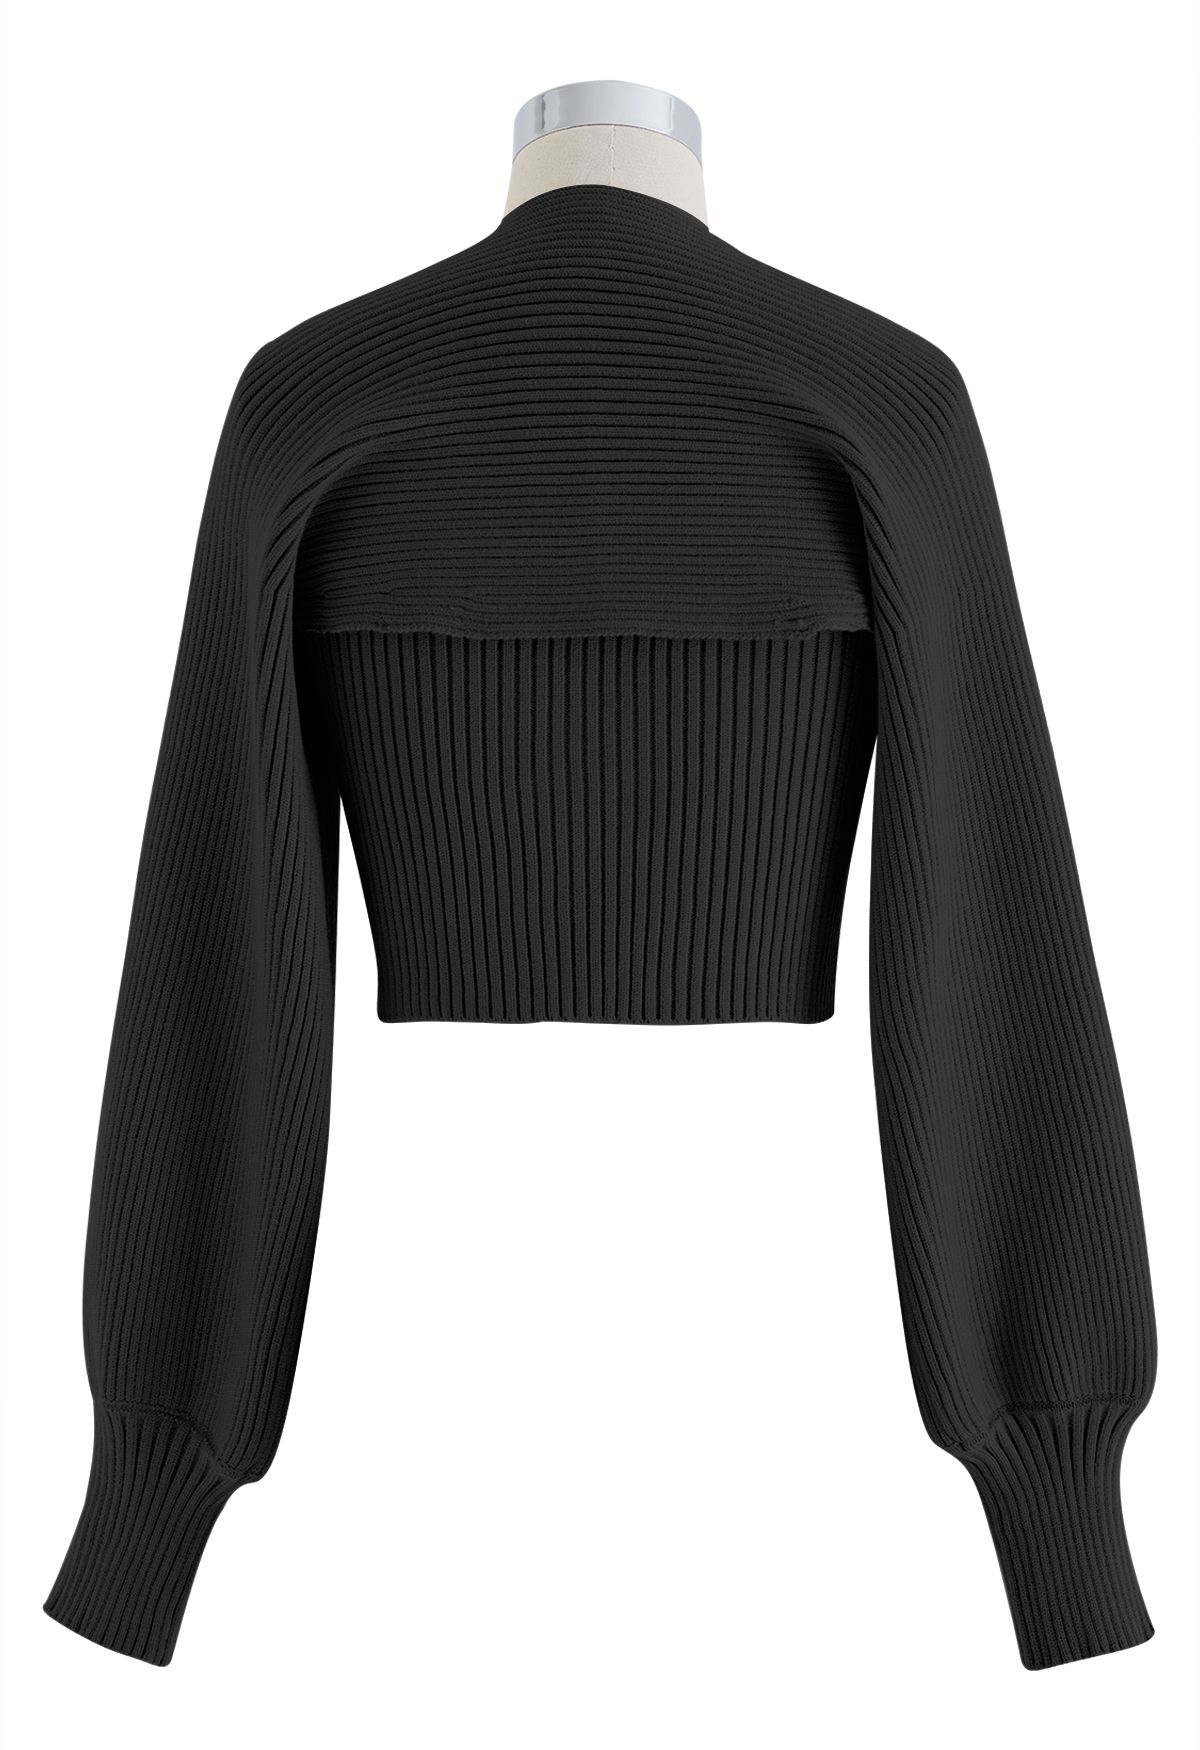 Conjunto de top de punto sin tirantes y manga de suéter en negro